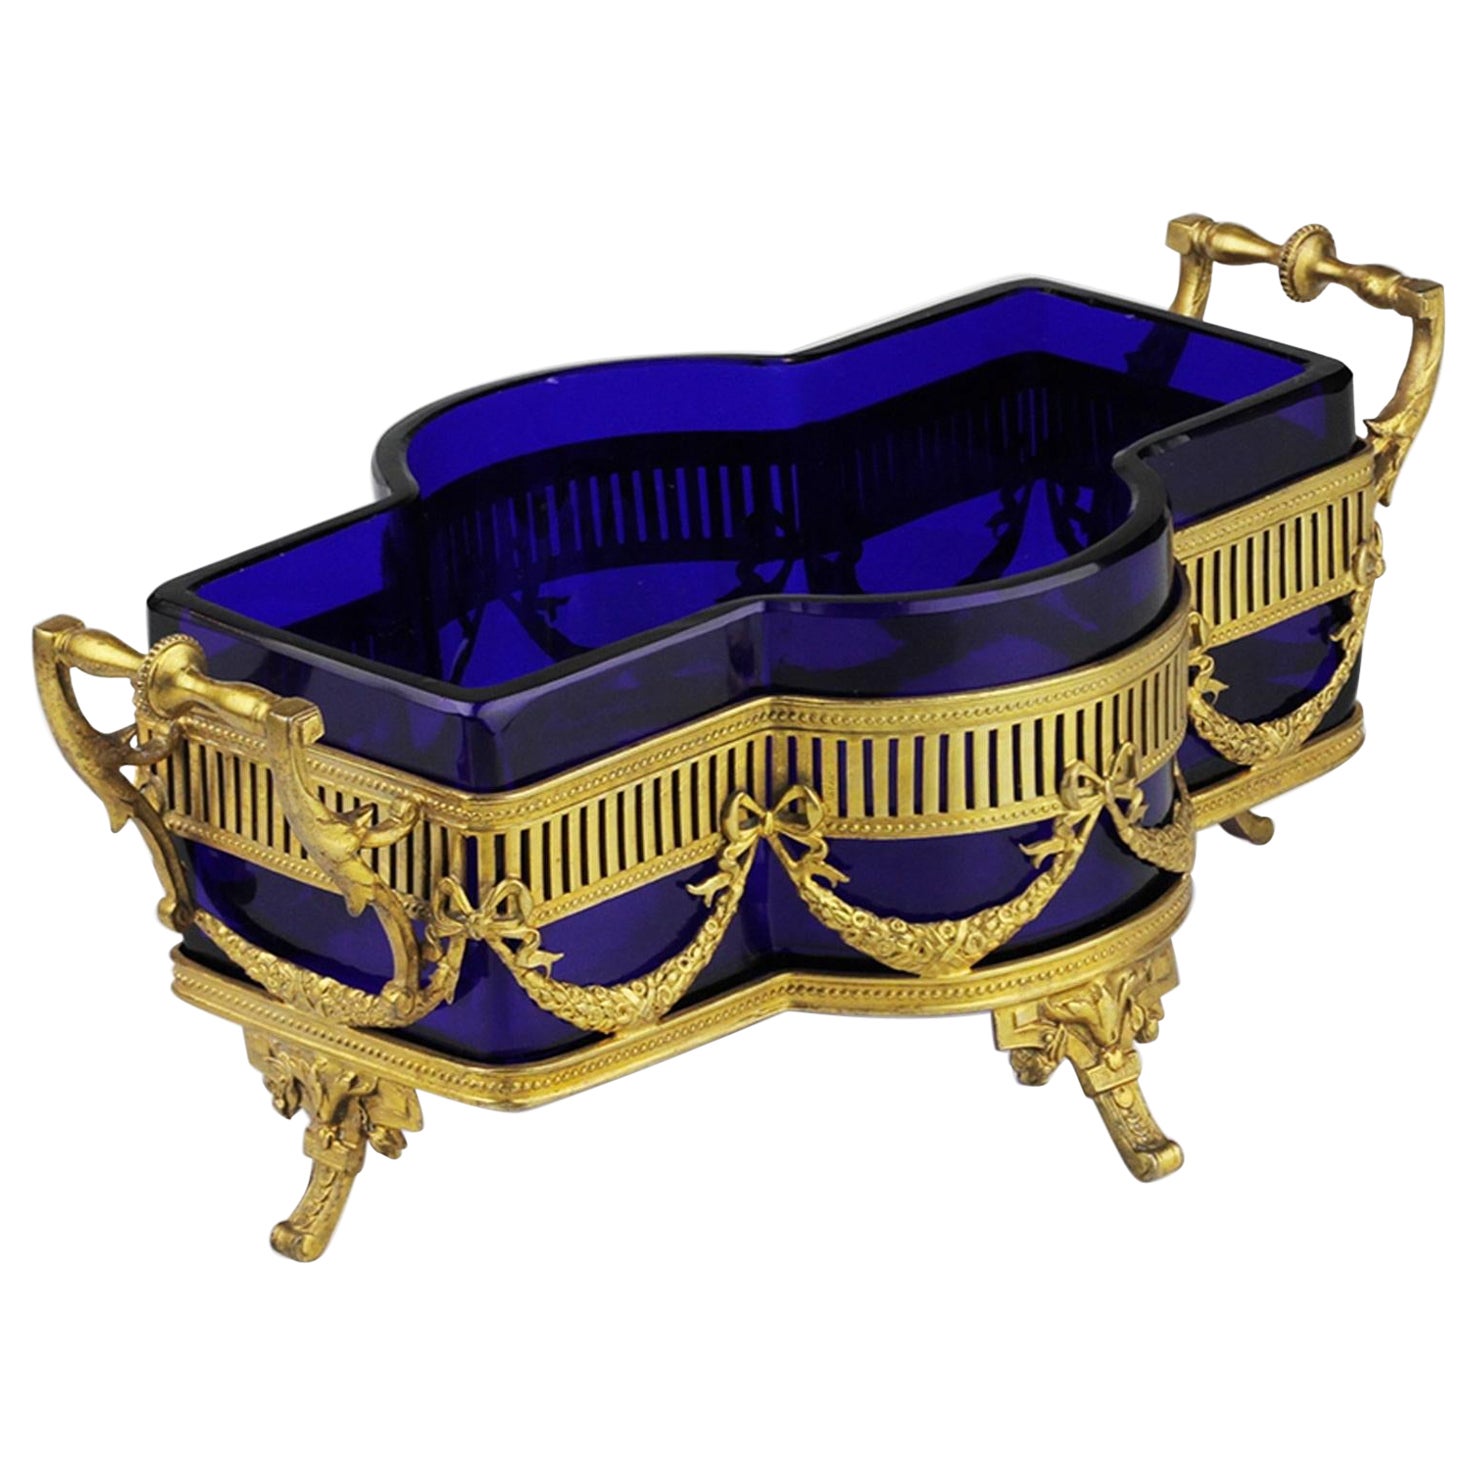 Centre de table de style néoclassique de la fin de l'époque victorienne, en argent doré et verre cobalt